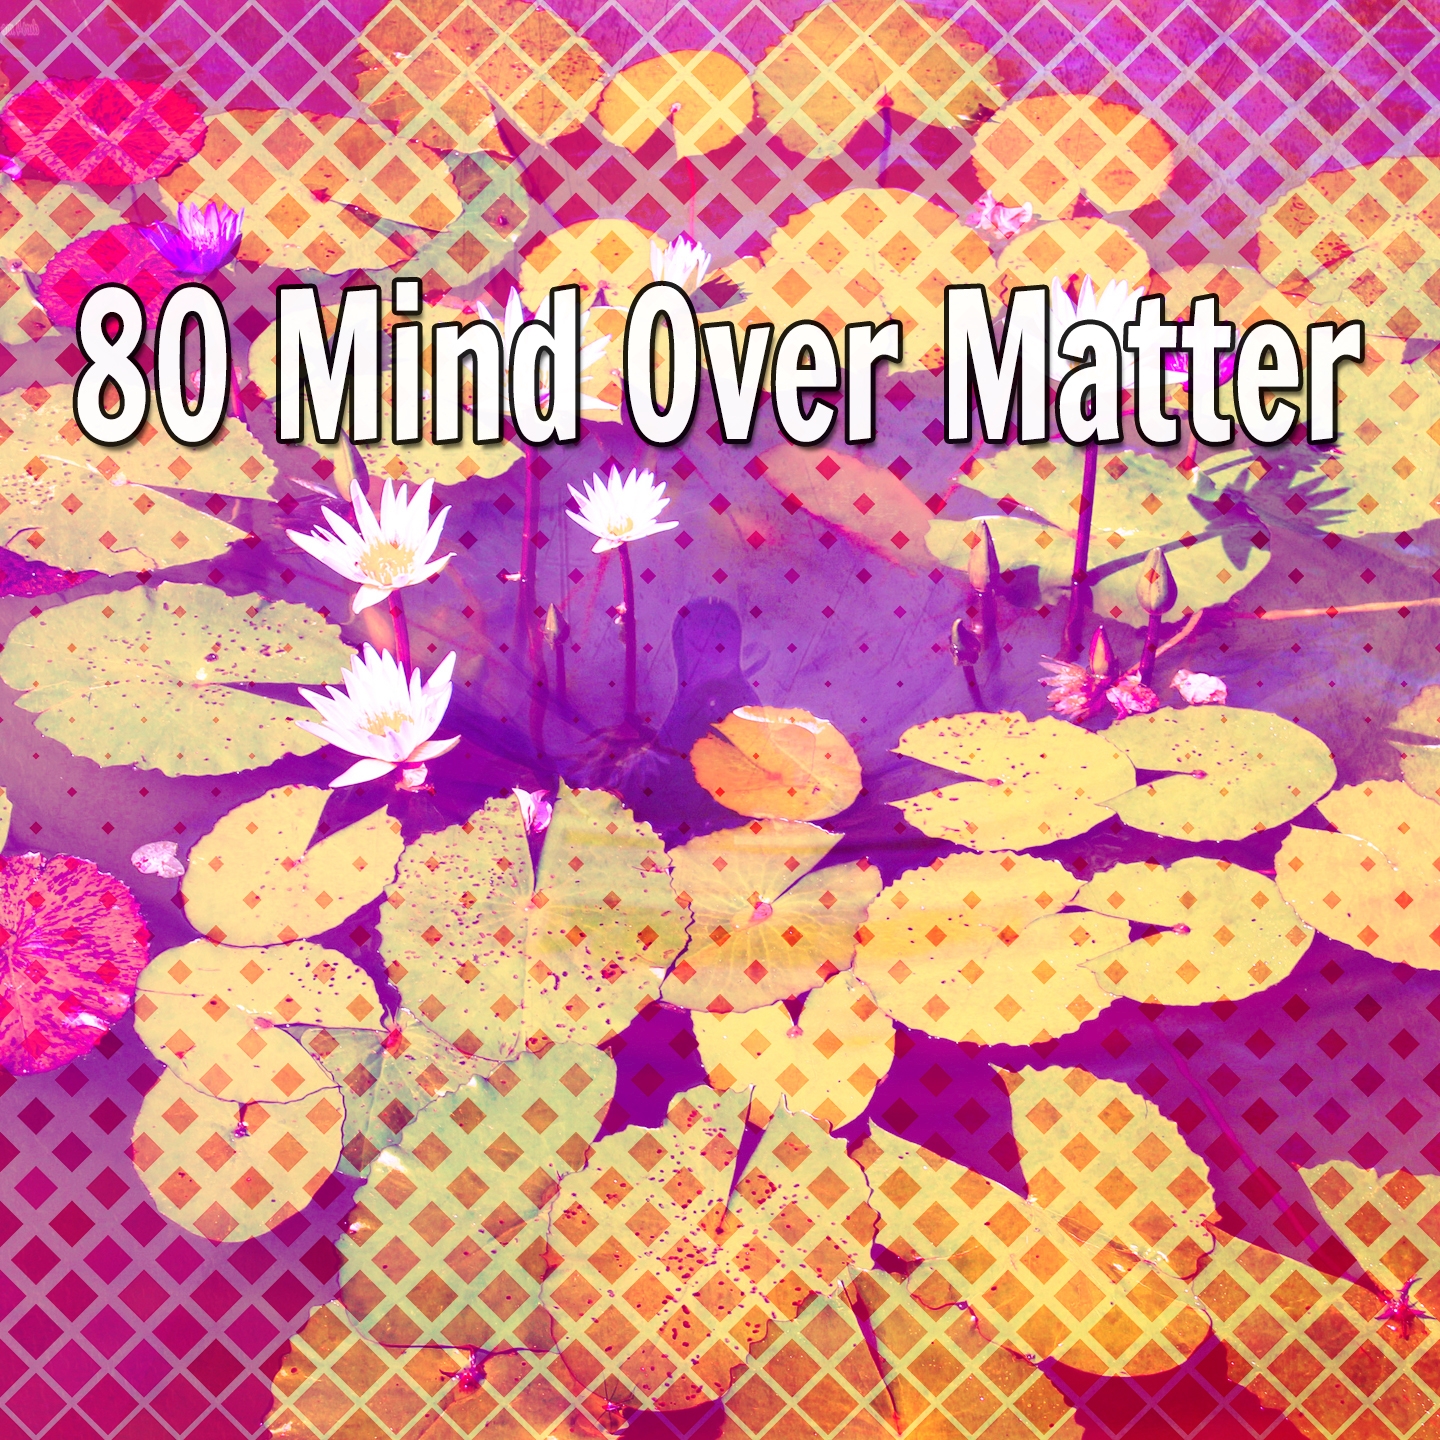 80 Mind Over Matter